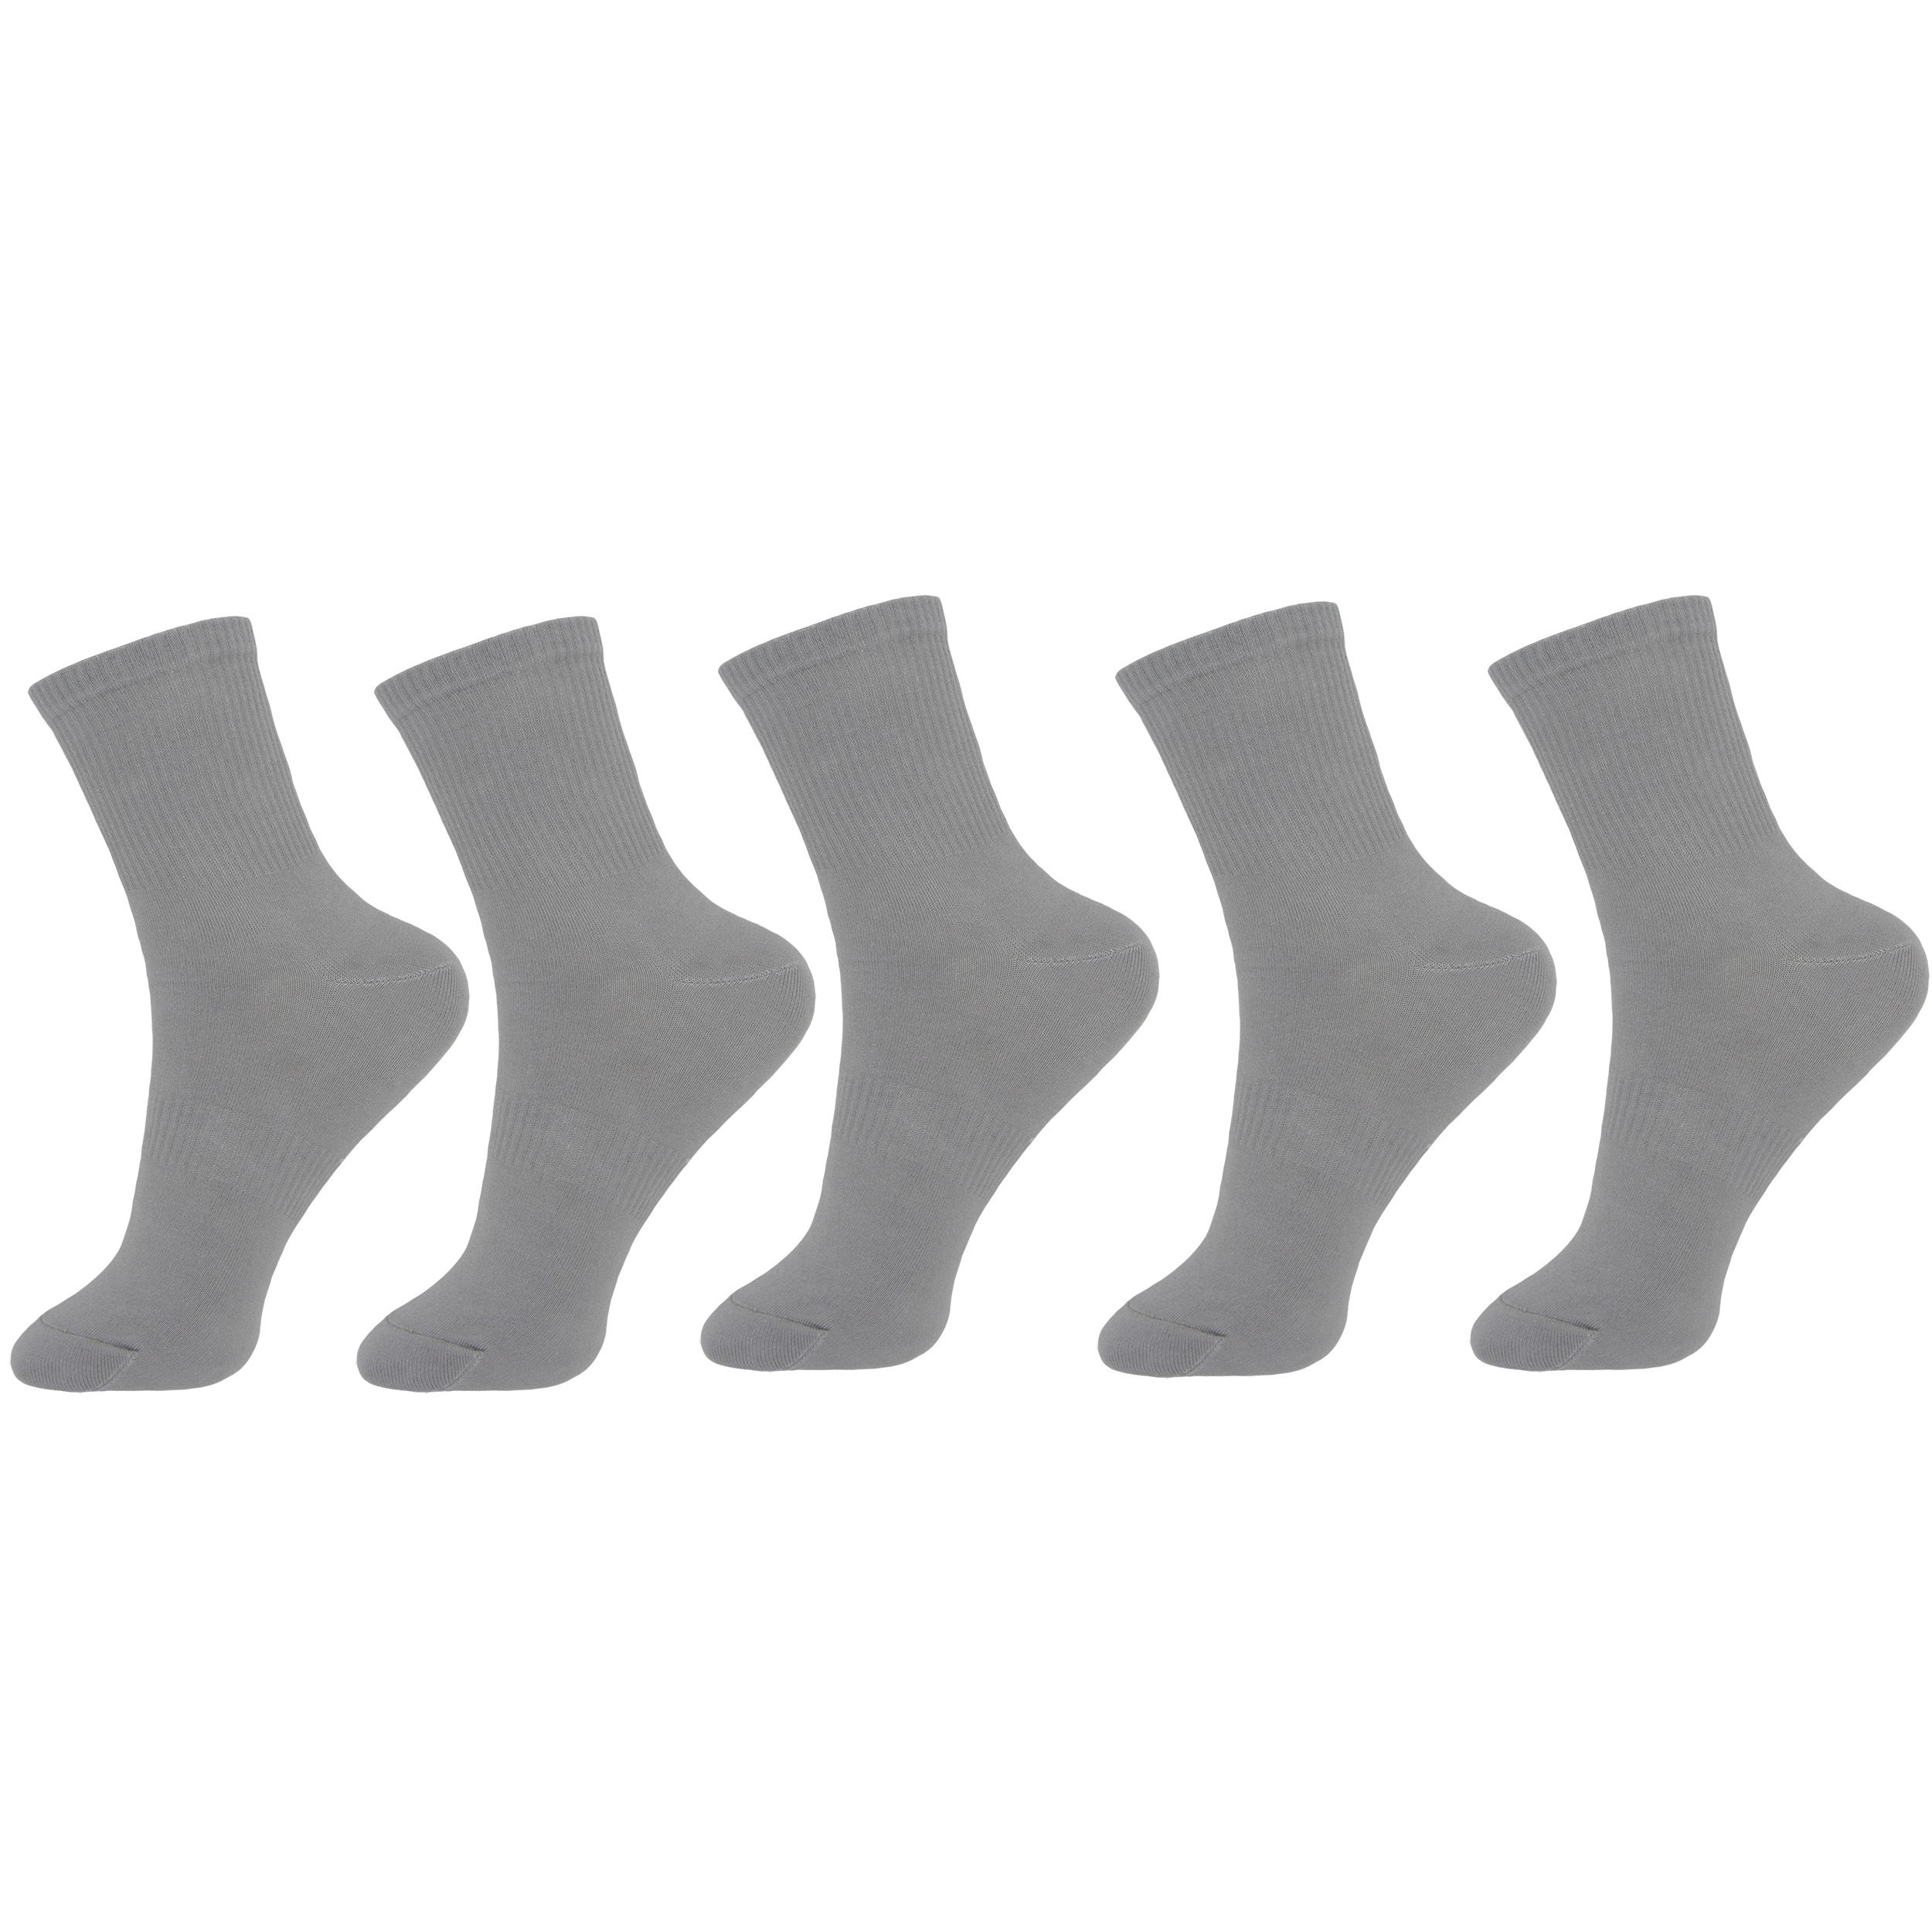  جوراب مردانه ادیب مدل کبریتی کد 3944 بسته 5 عددی